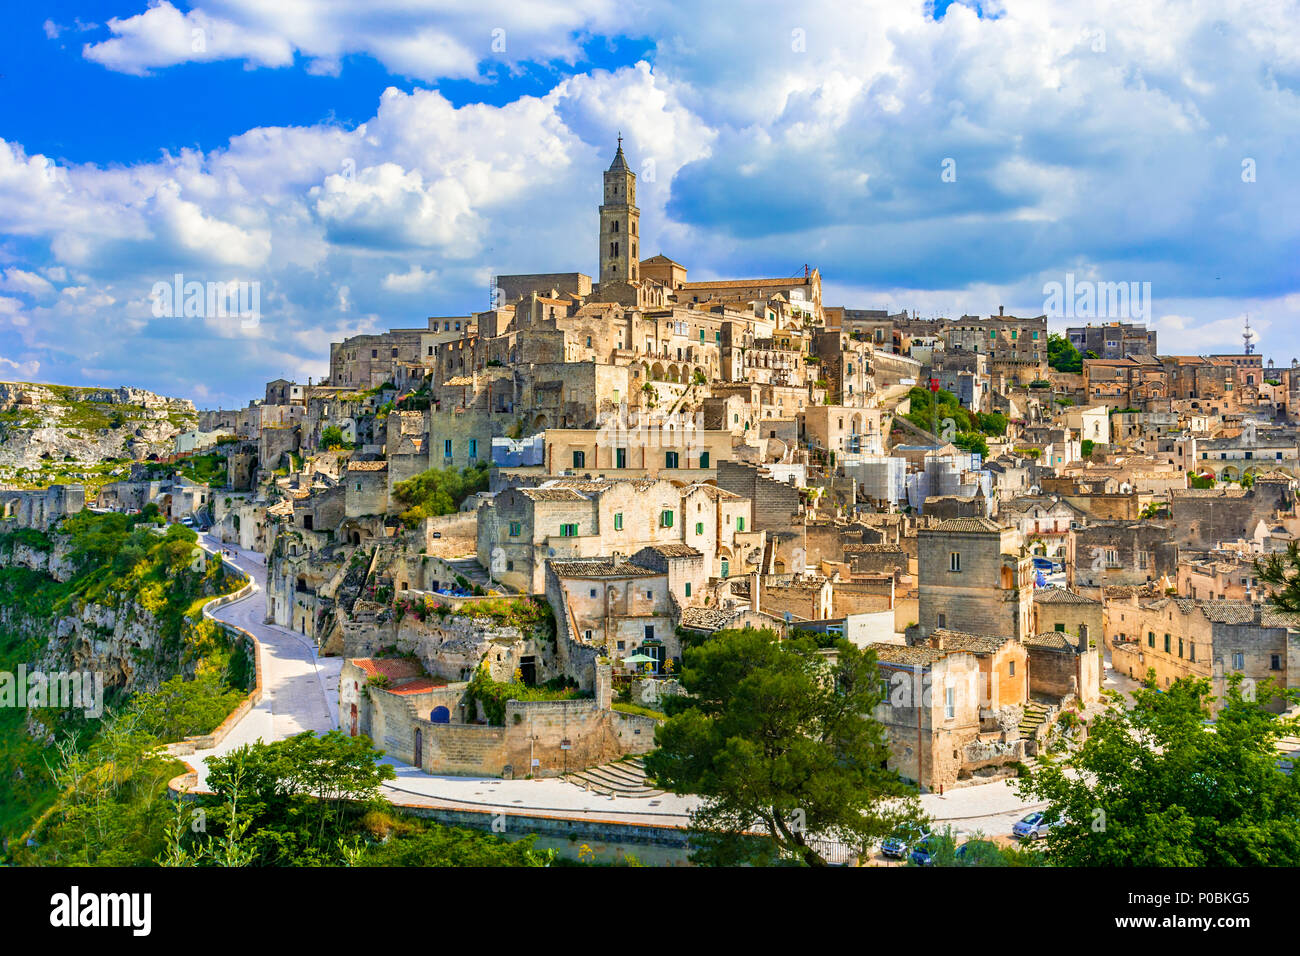 Matera, Basilicata, Italia: Panorama della città vecchia - Sassi di Matera,  capitale europea della cultura, all'alba Foto stock - Alamy